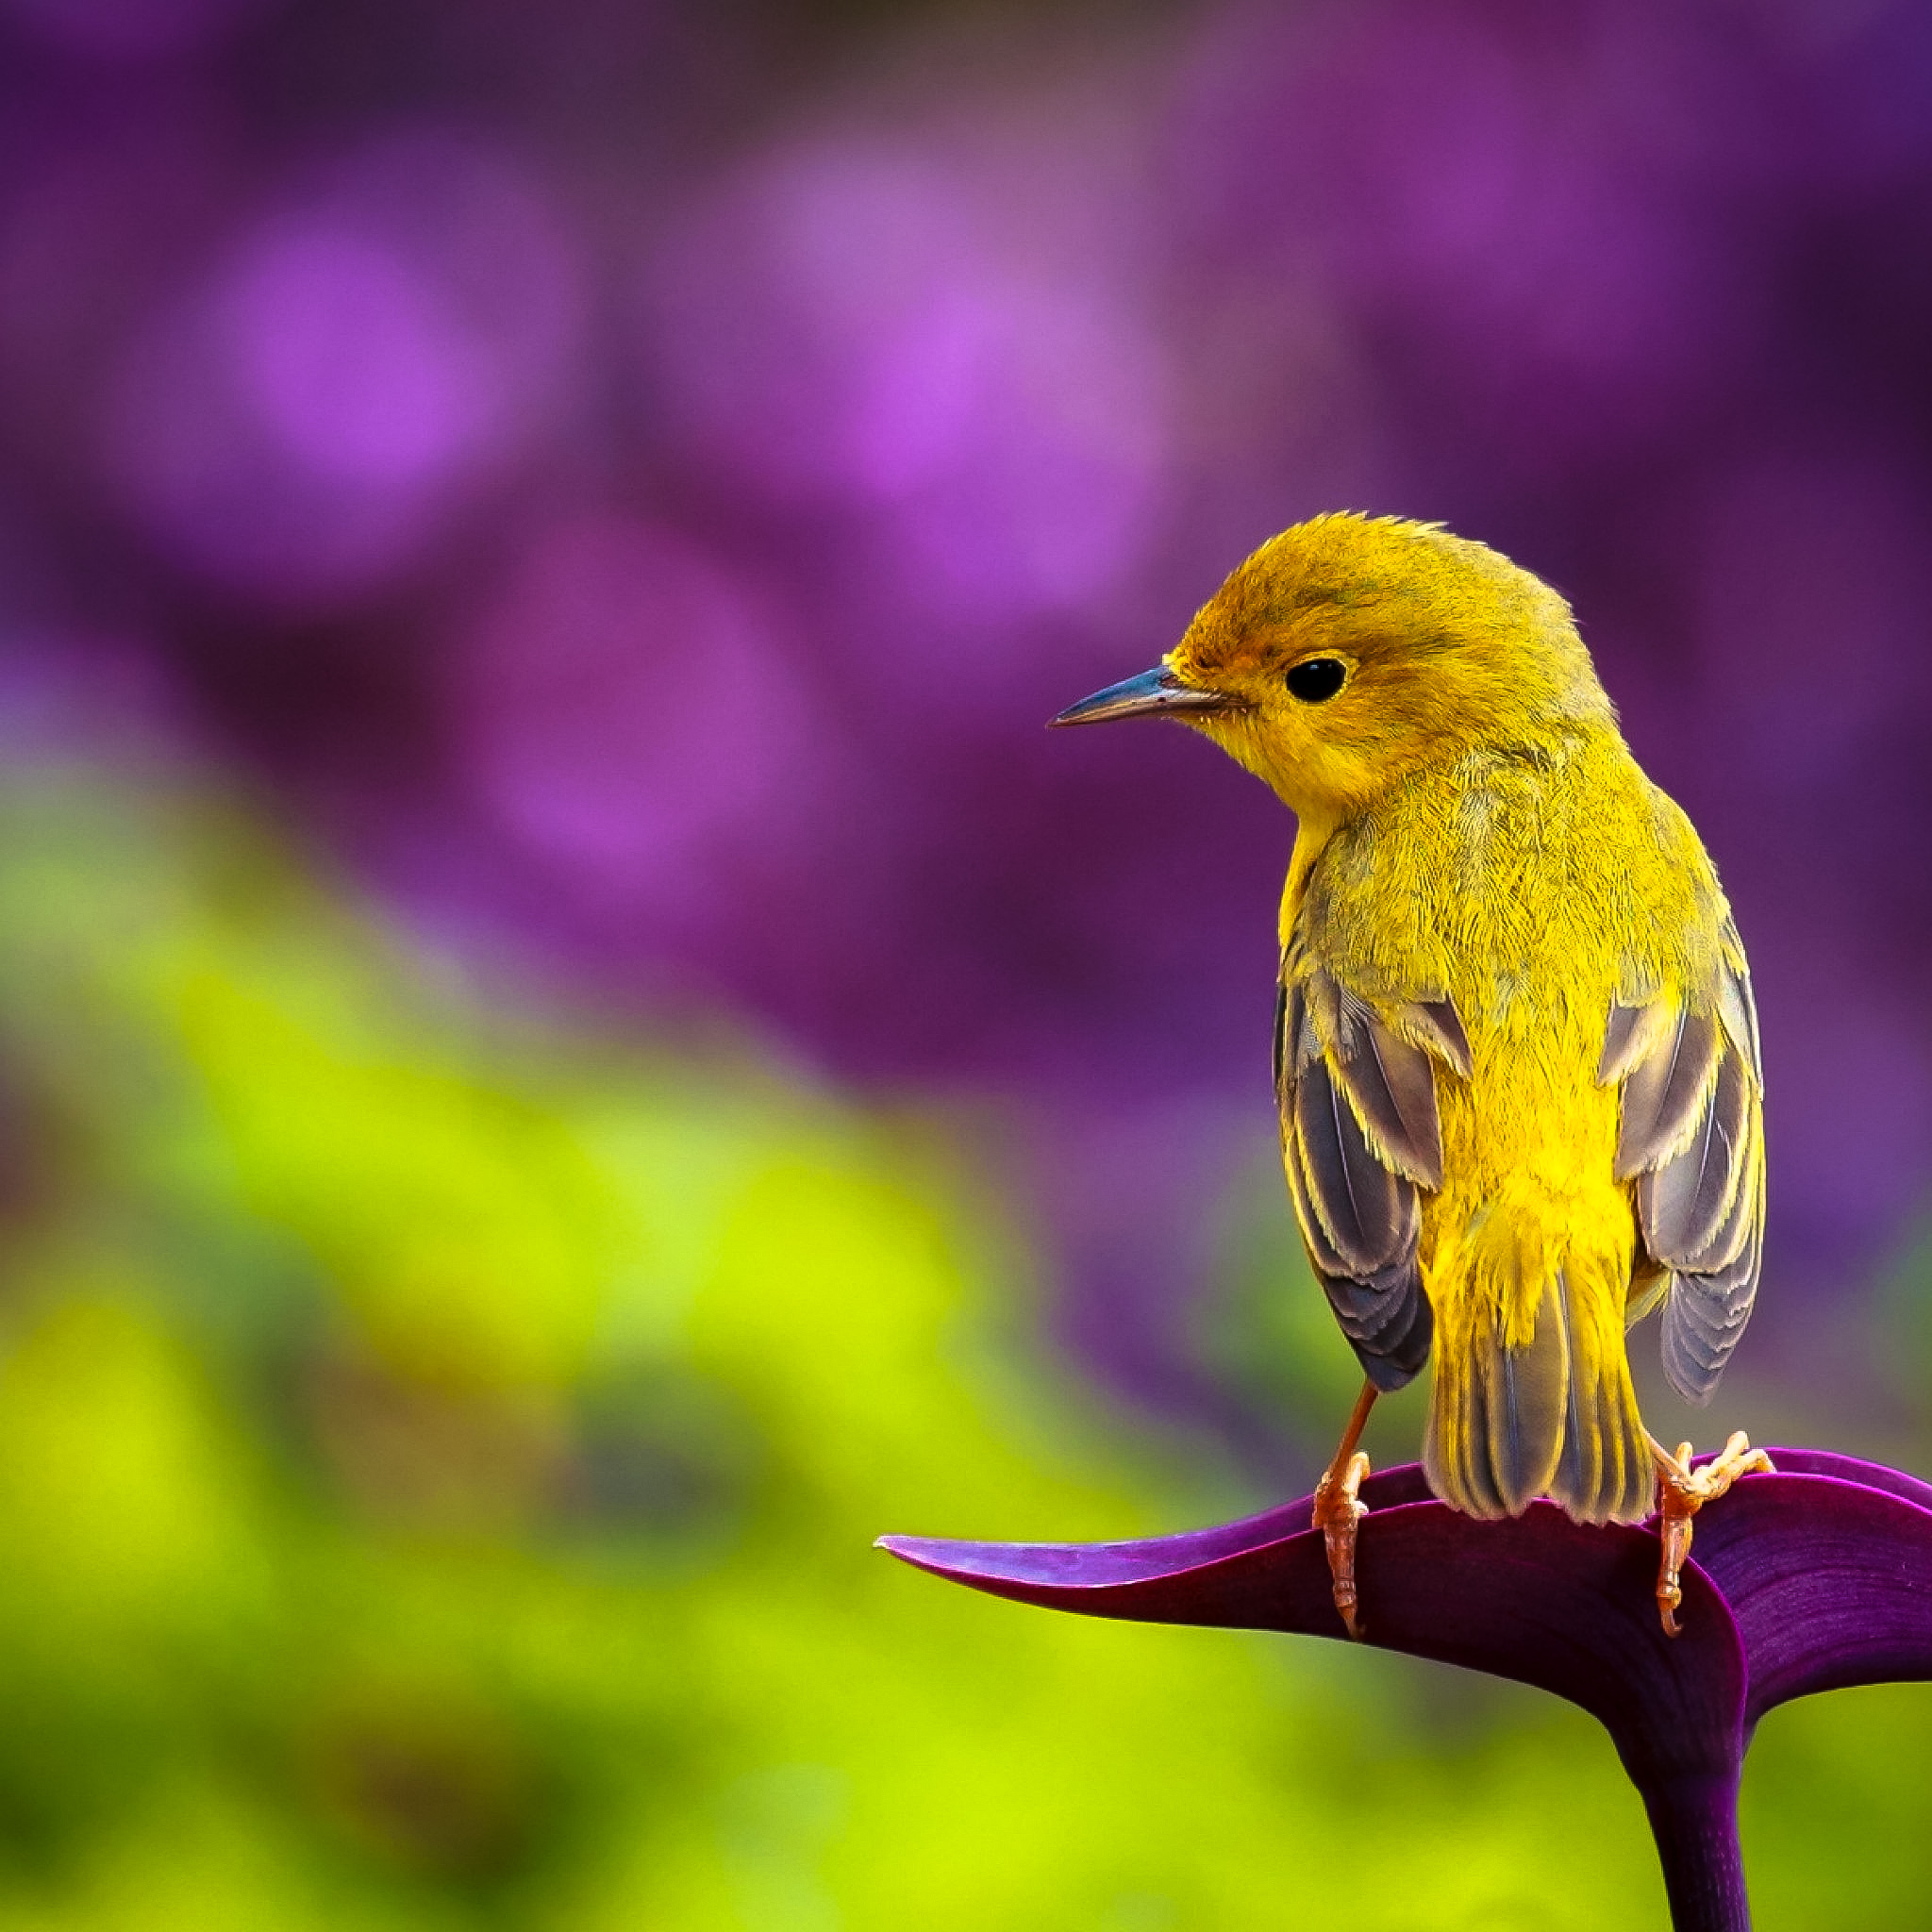 ★ Pretty Bird by @RetinaiPadWalls on twitter.jpg